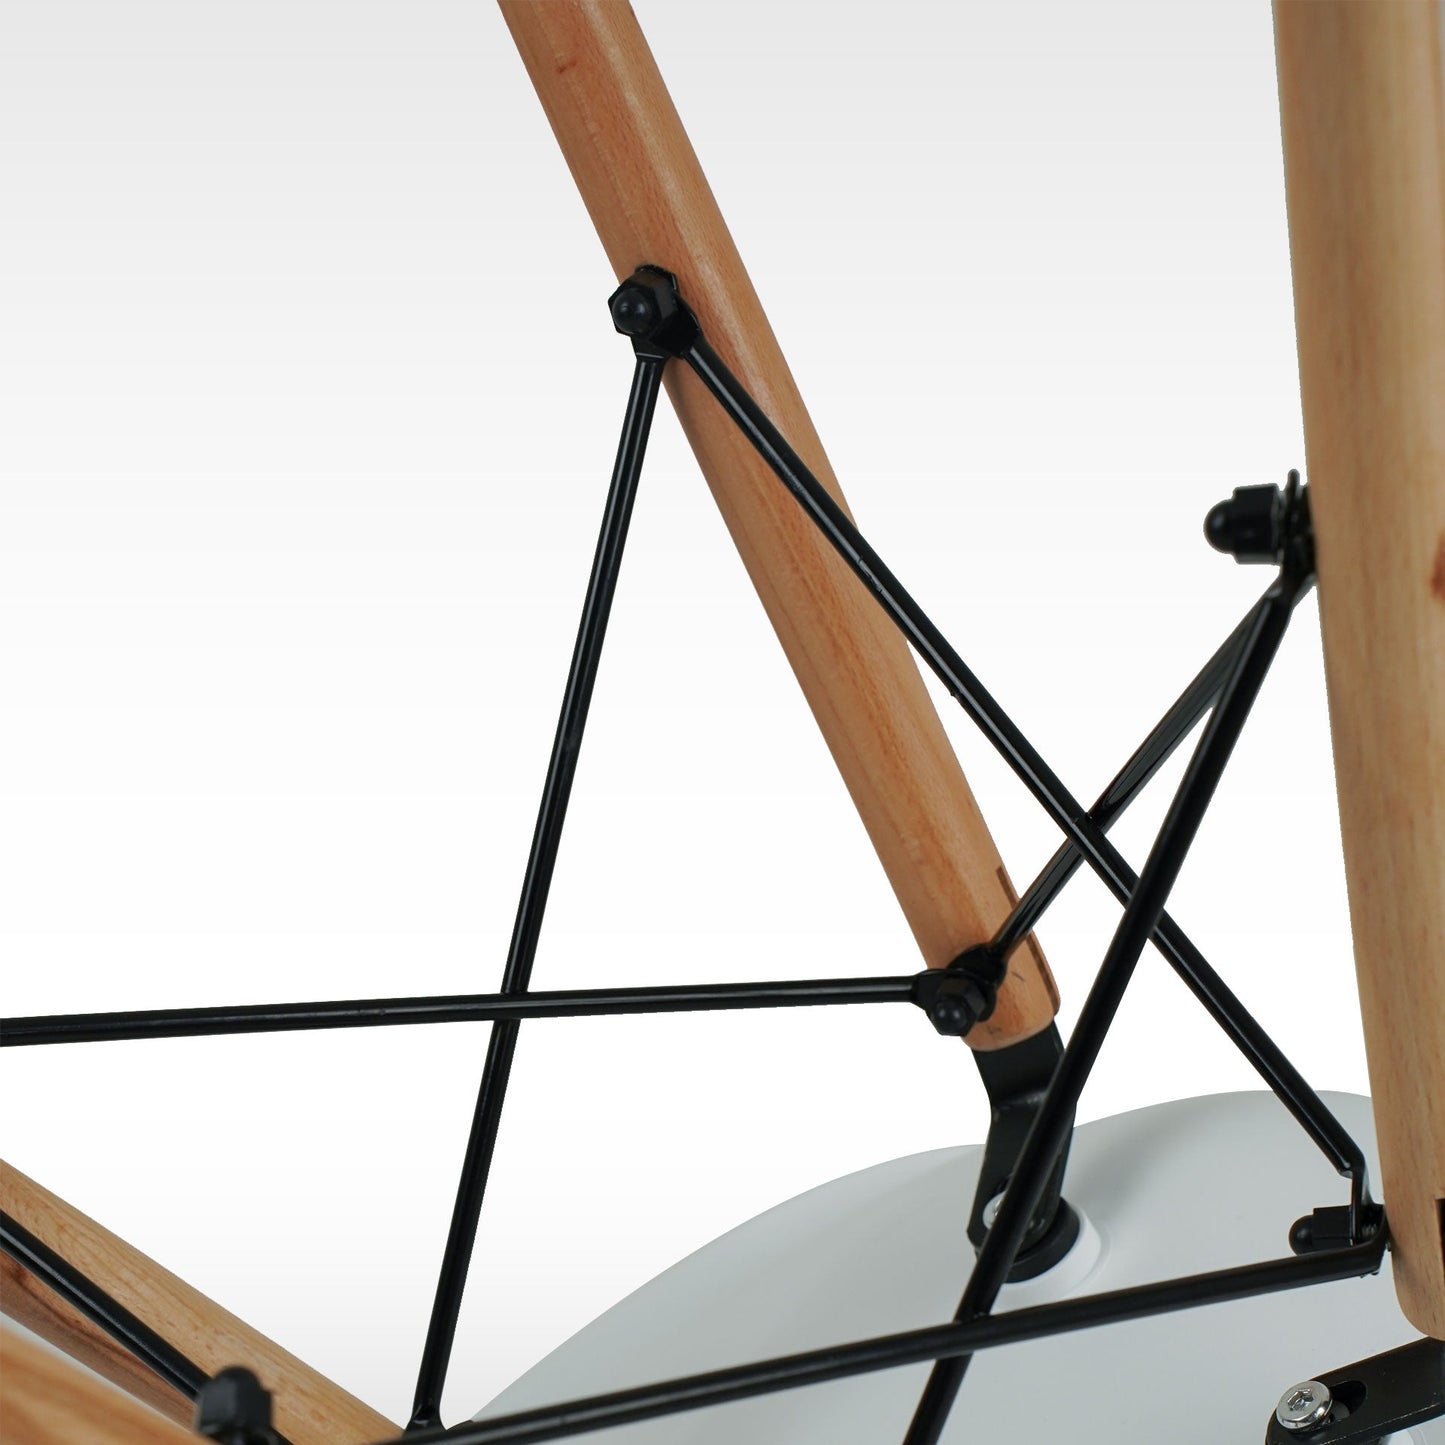 Silla Mirel Shell Minimalista para Comedor e interiores el Hogar - Diseño moderno y ergonómico Set 2